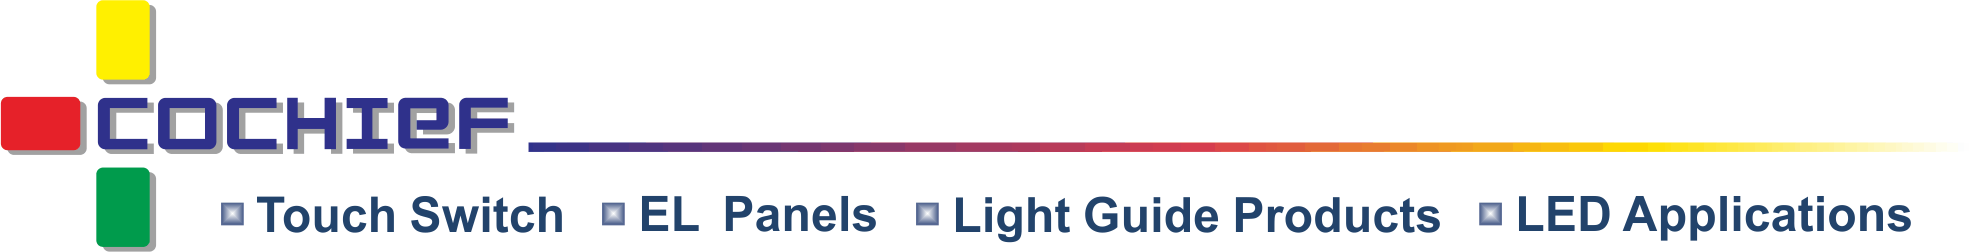 皓智企業股份有限公司 - 静電容量式スマートライトエフェクトタッチモジュール、薄いタッチフィルム、コールドライト、ライトガイドの開発および設計メーカー。